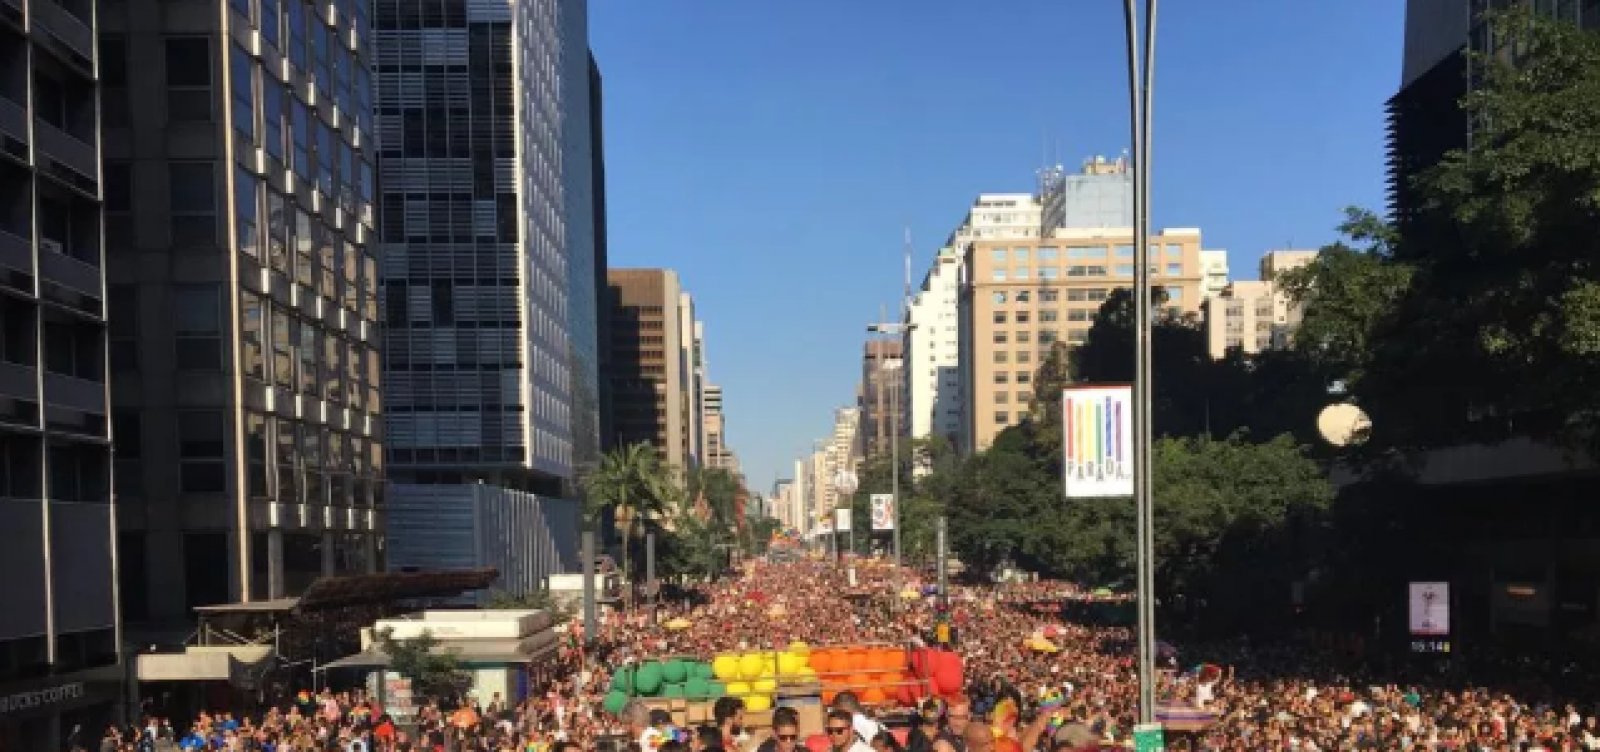 Parada LGBT reúne multidão em São Paulo